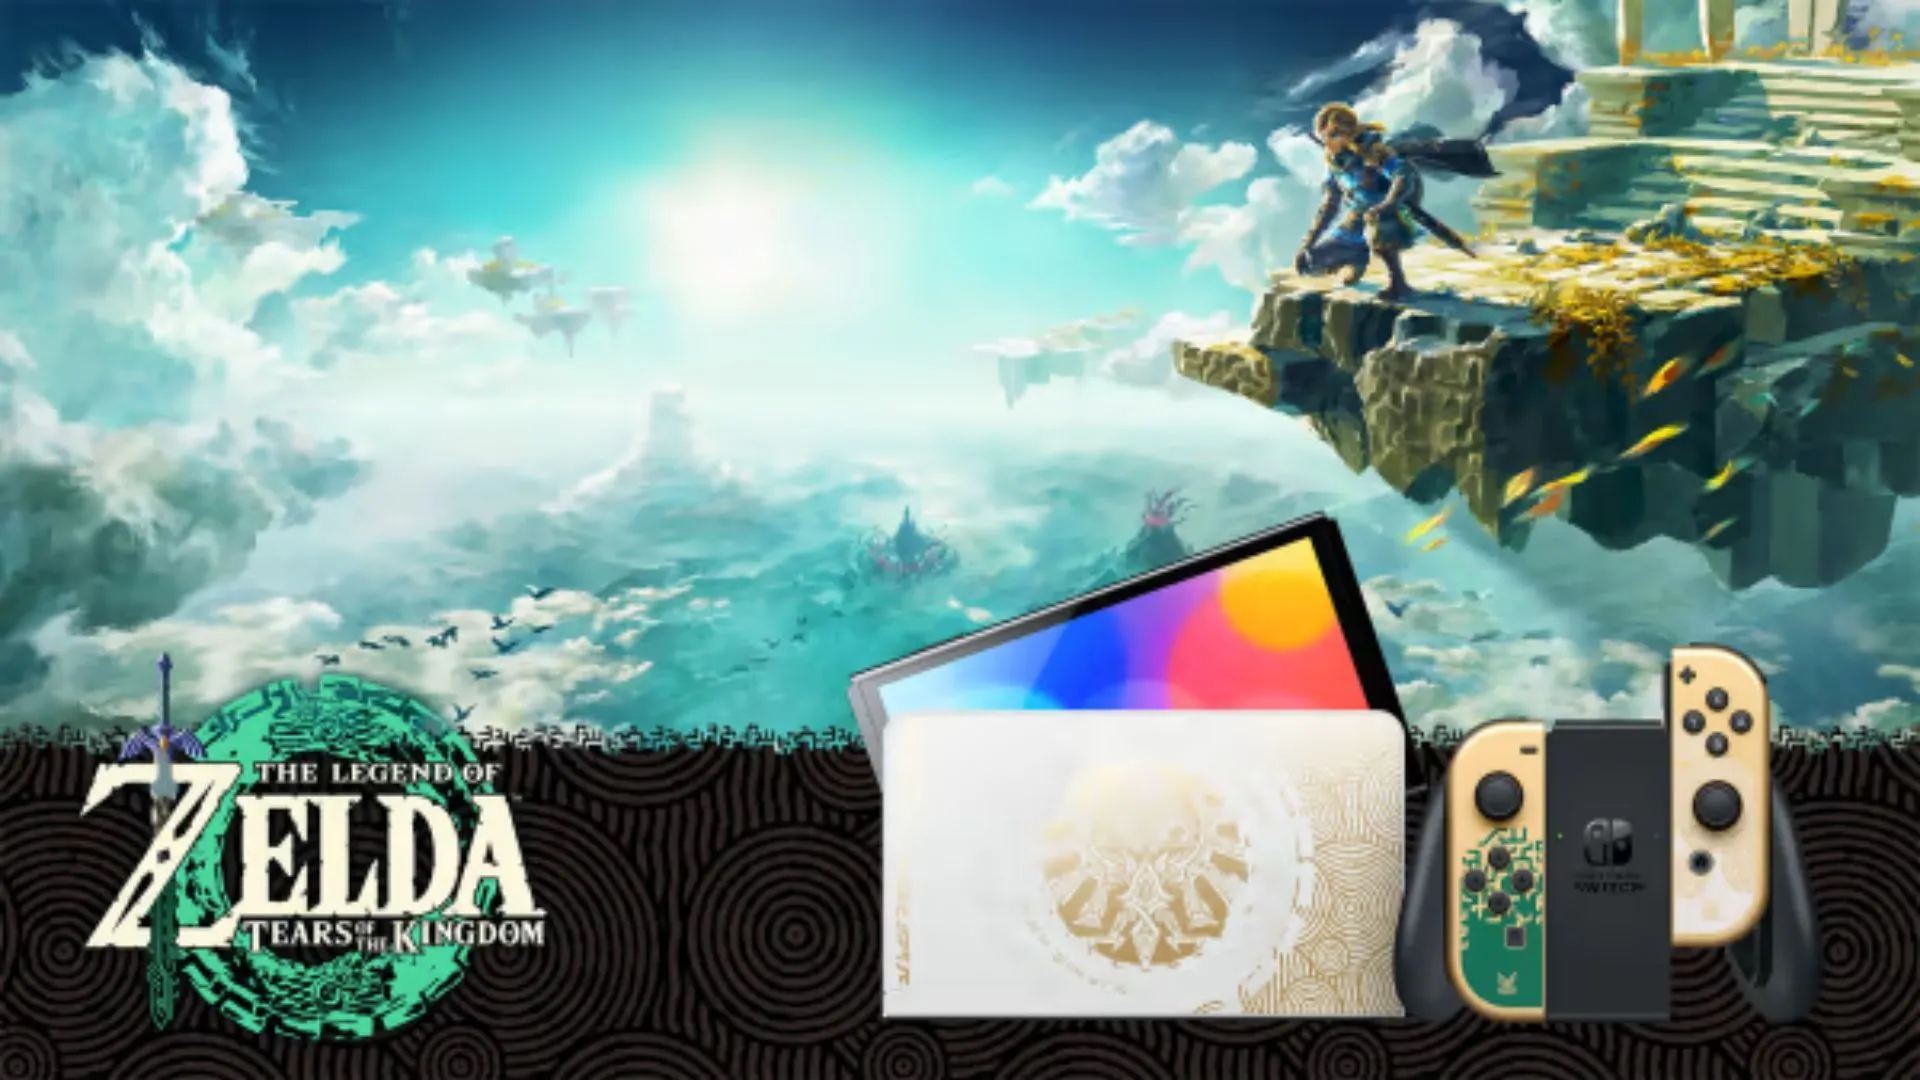 В The Legend of Zelda: Tears of the Kingdom лучше всего играть с новым OLED-дисплеем Nintendo Switch (изображение предоставлено Nintendo).